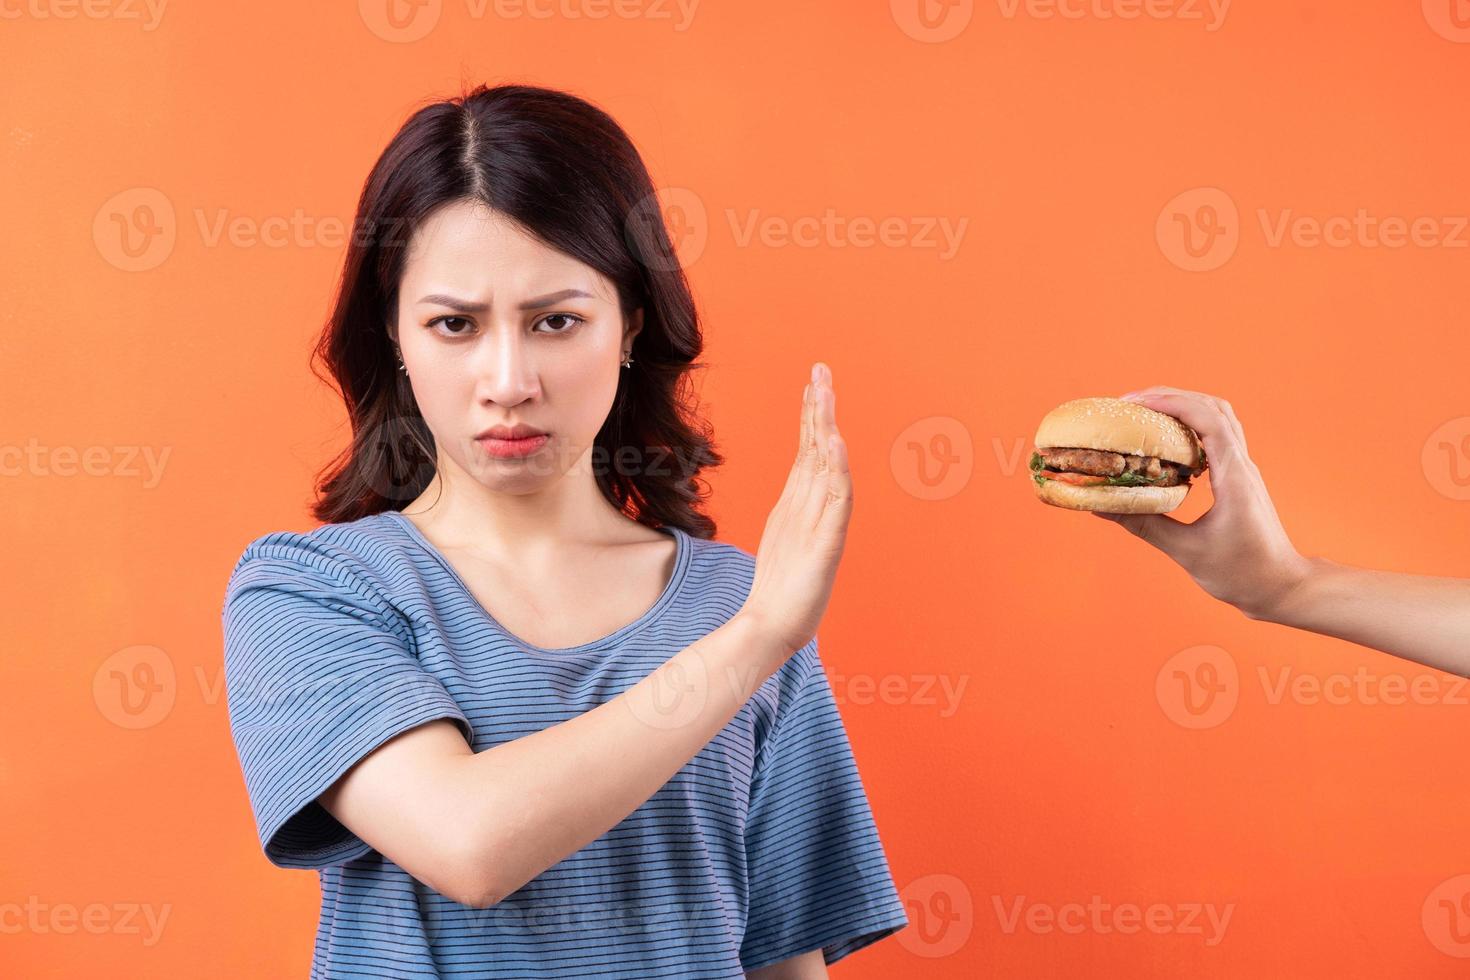 jovem asiática desistindo do hábito de comer hambúrgueres foto